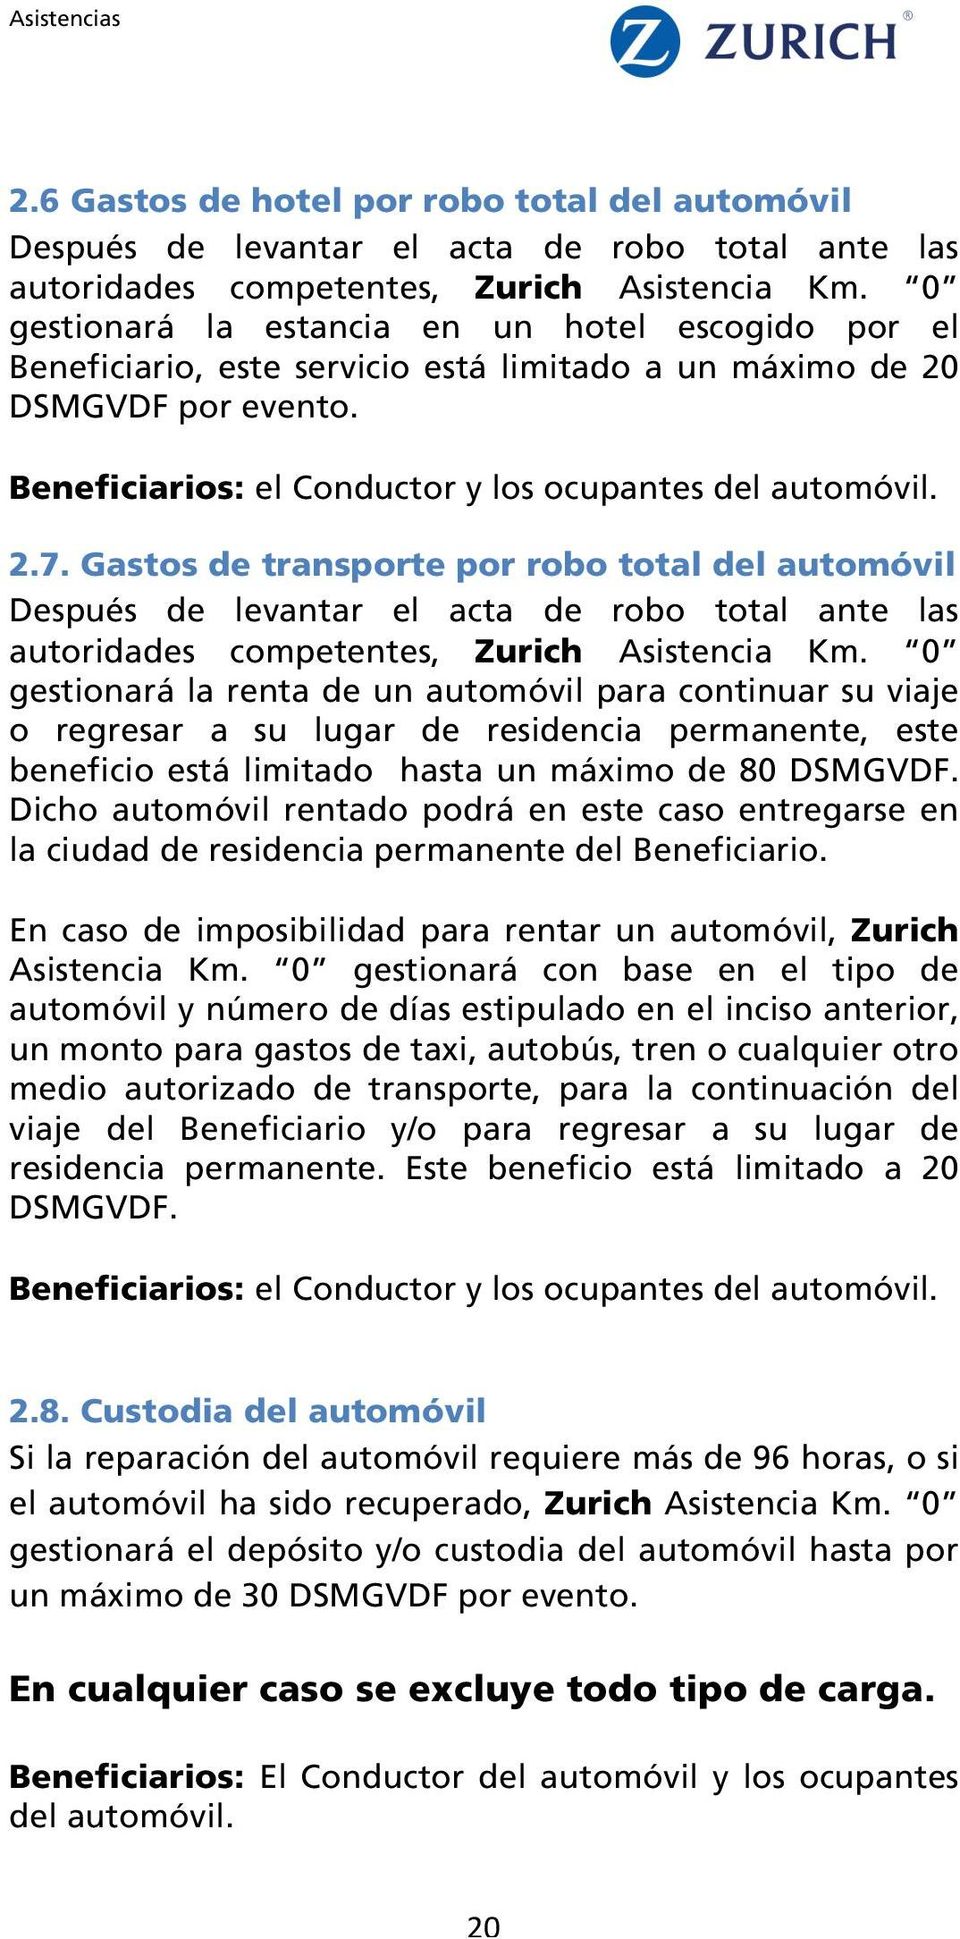 Gastos de transporte por robo total del automóvil Después de levantar el acta de robo total ante las autoridades competentes, Zurich Asistencia Km.